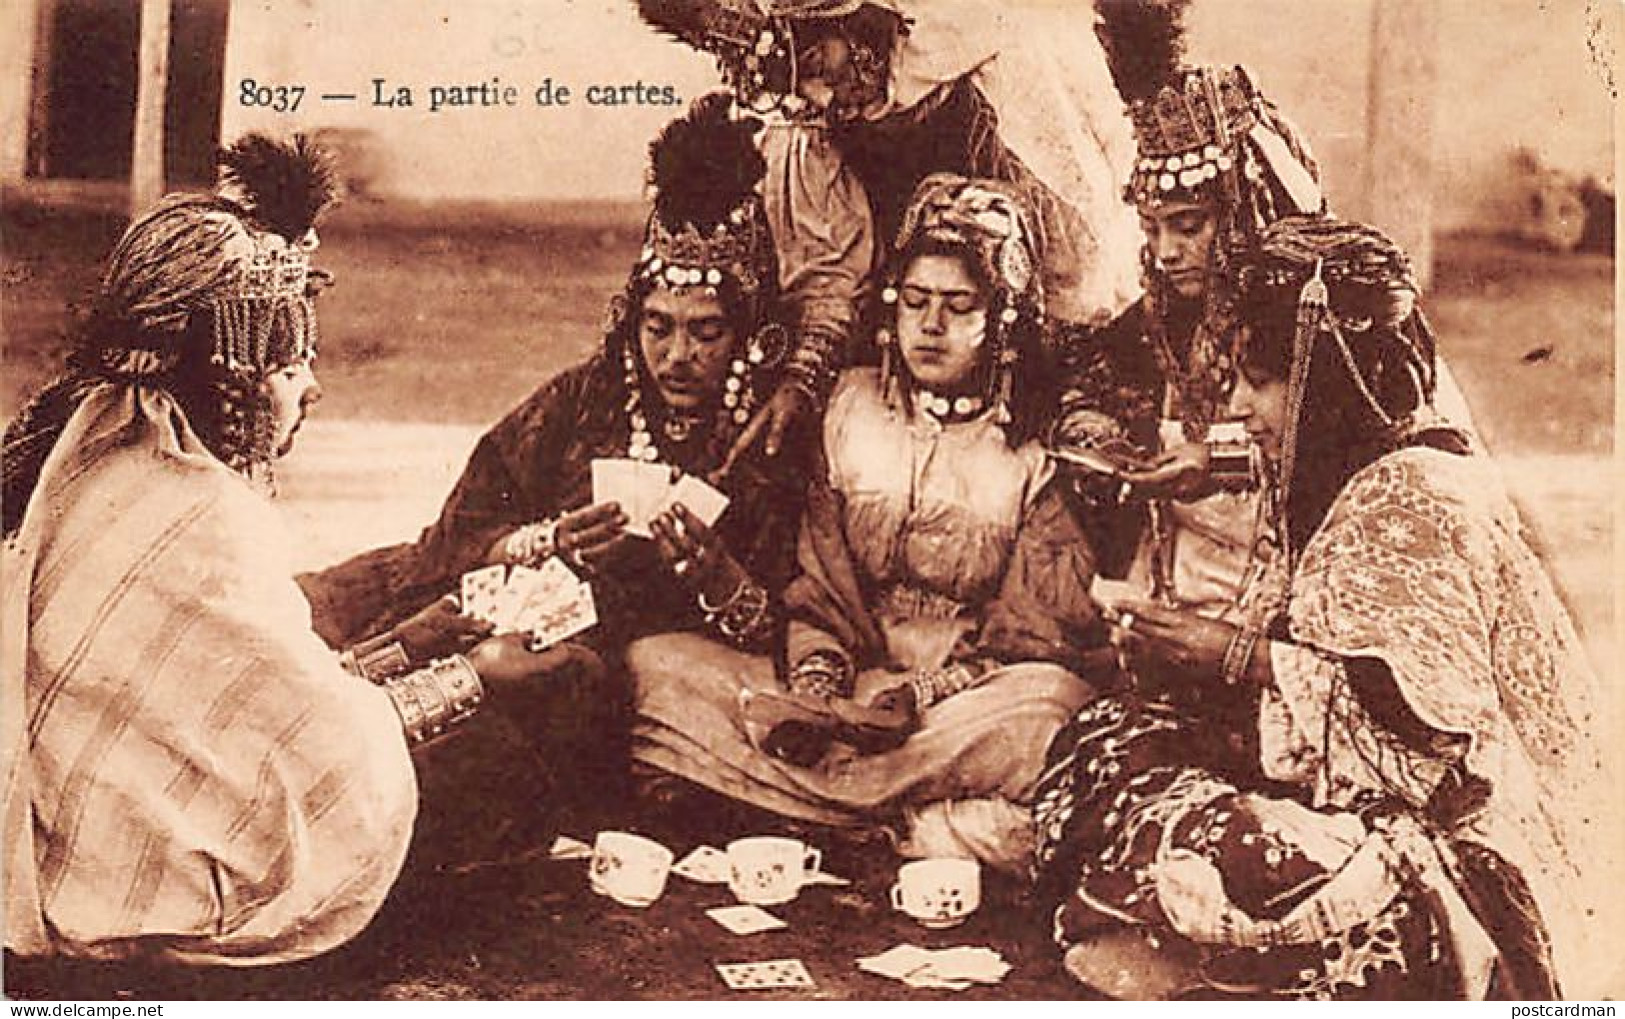 Algérie - La Partie De Cartes - Ouled-Naïls - Ed. A.F. 8037 - Femmes